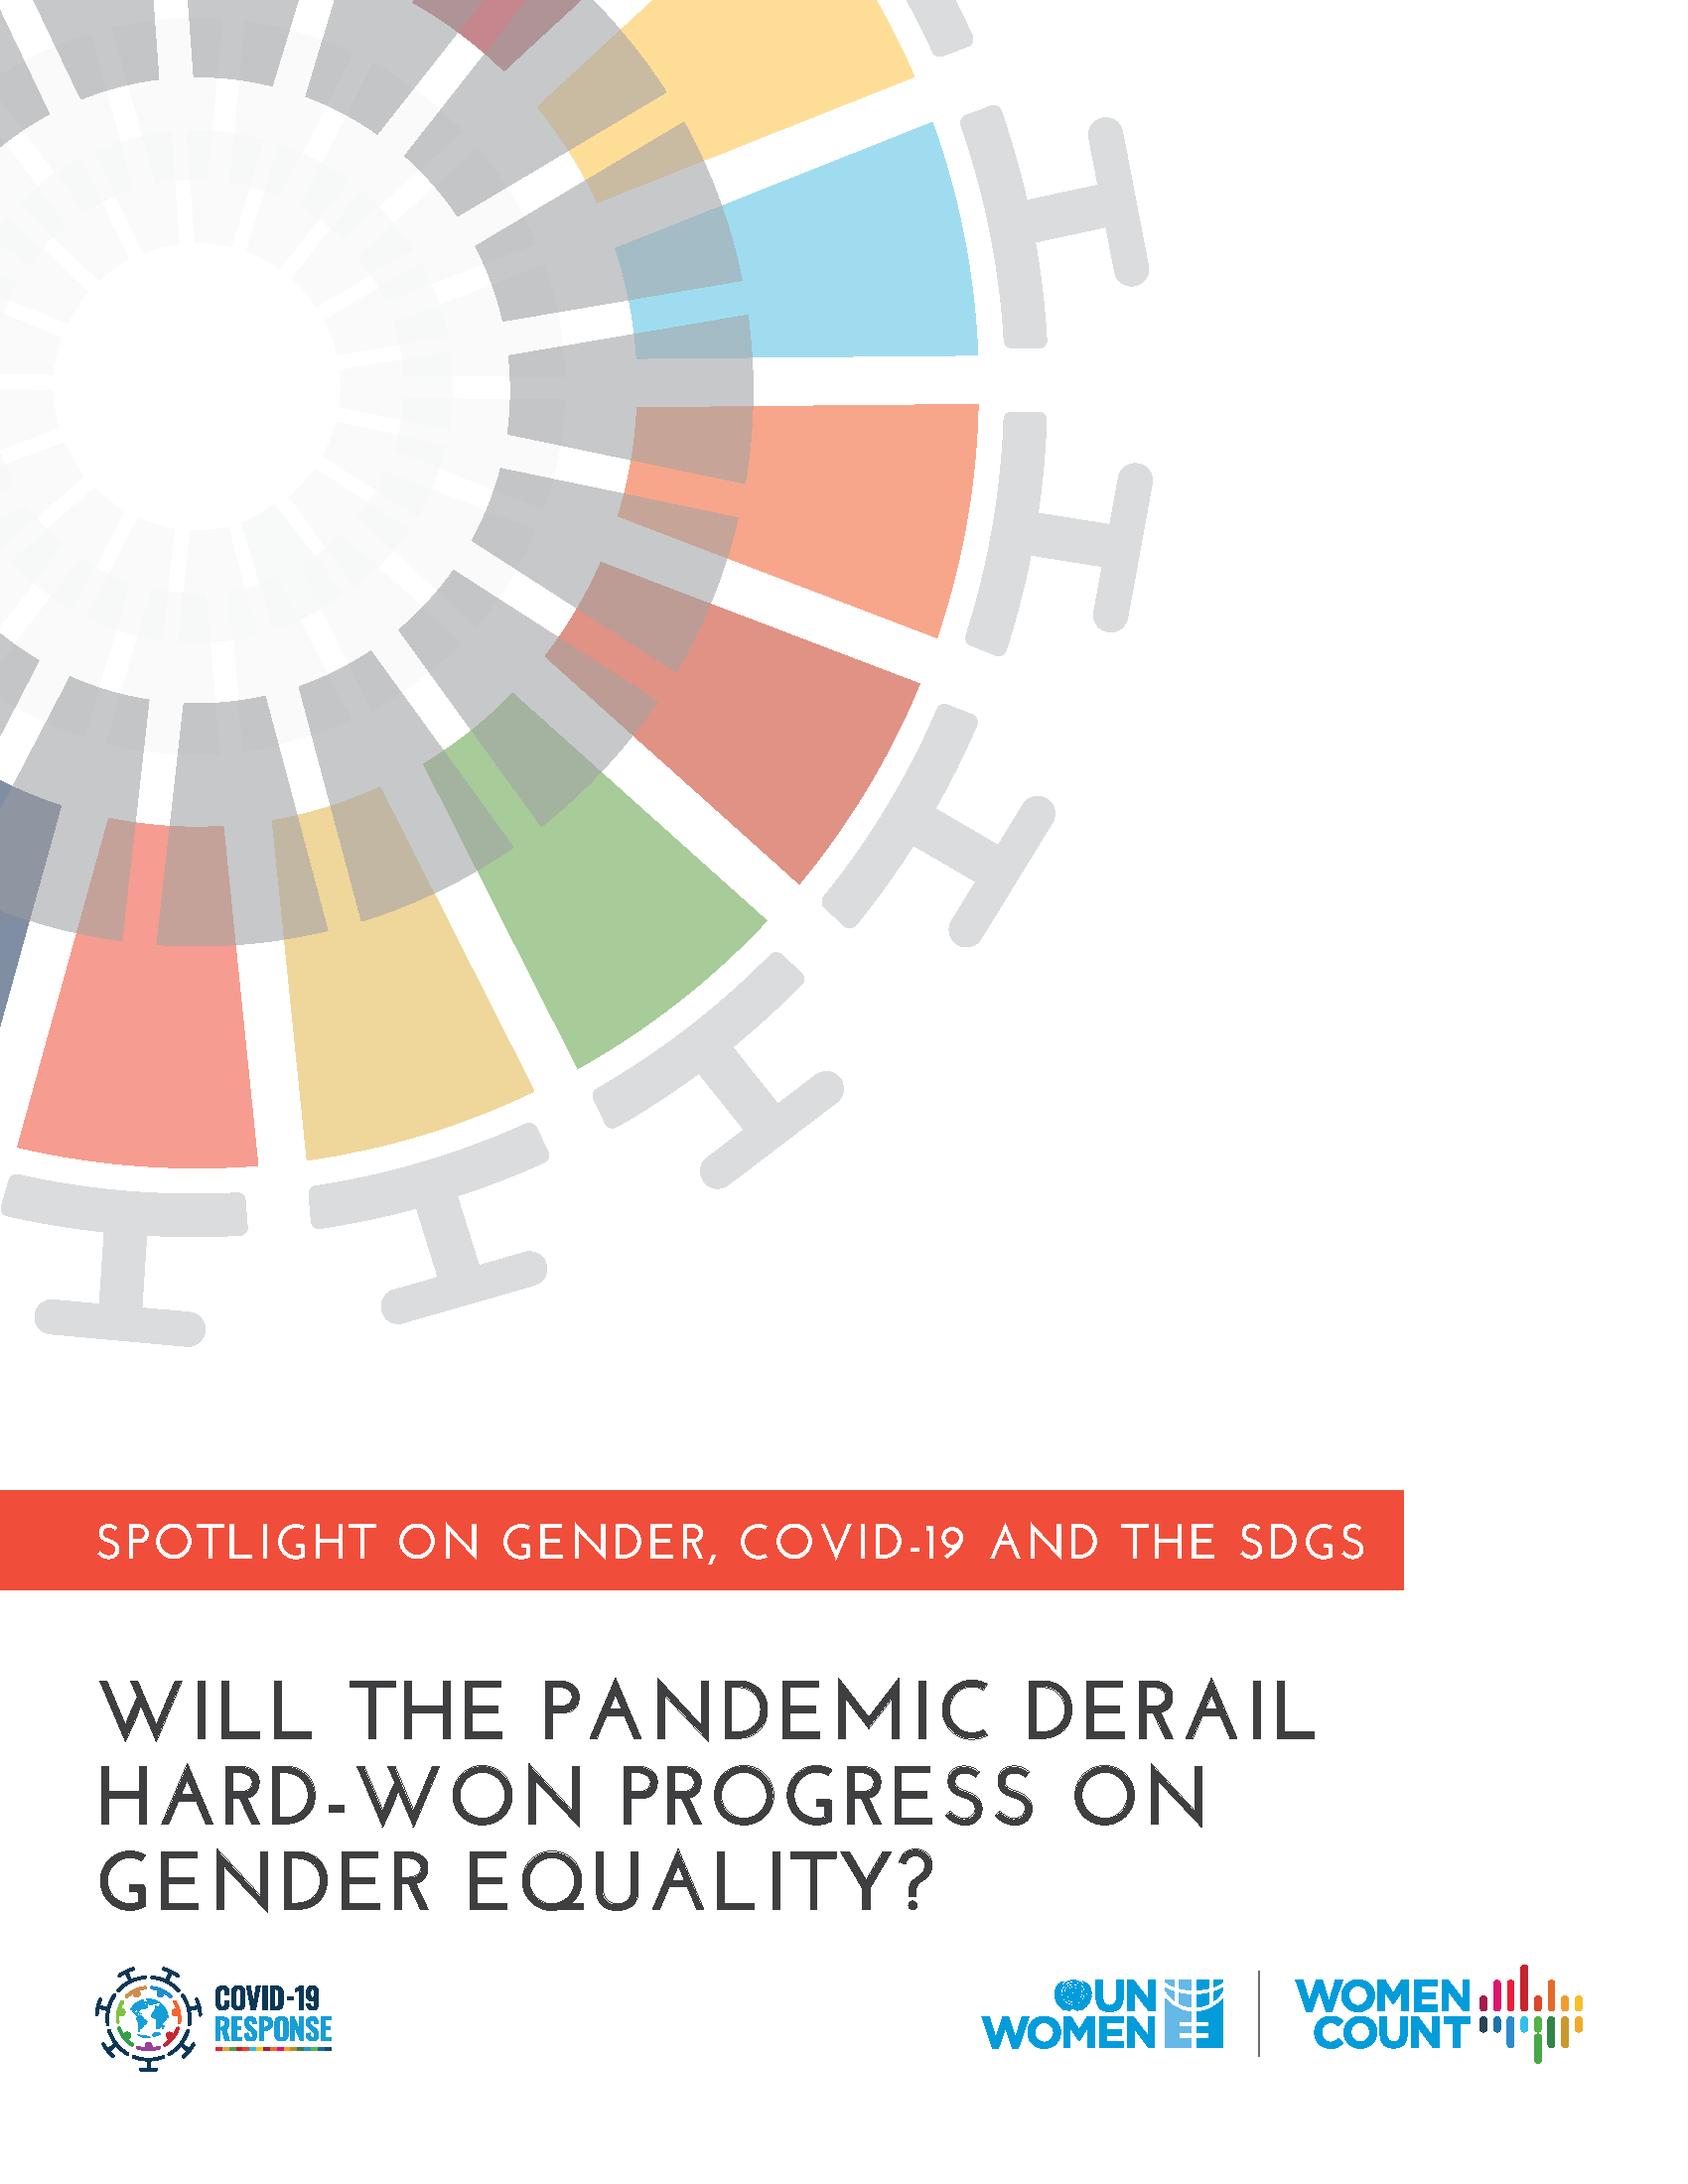 Spotlight on gender, COVID-19 and SDGs